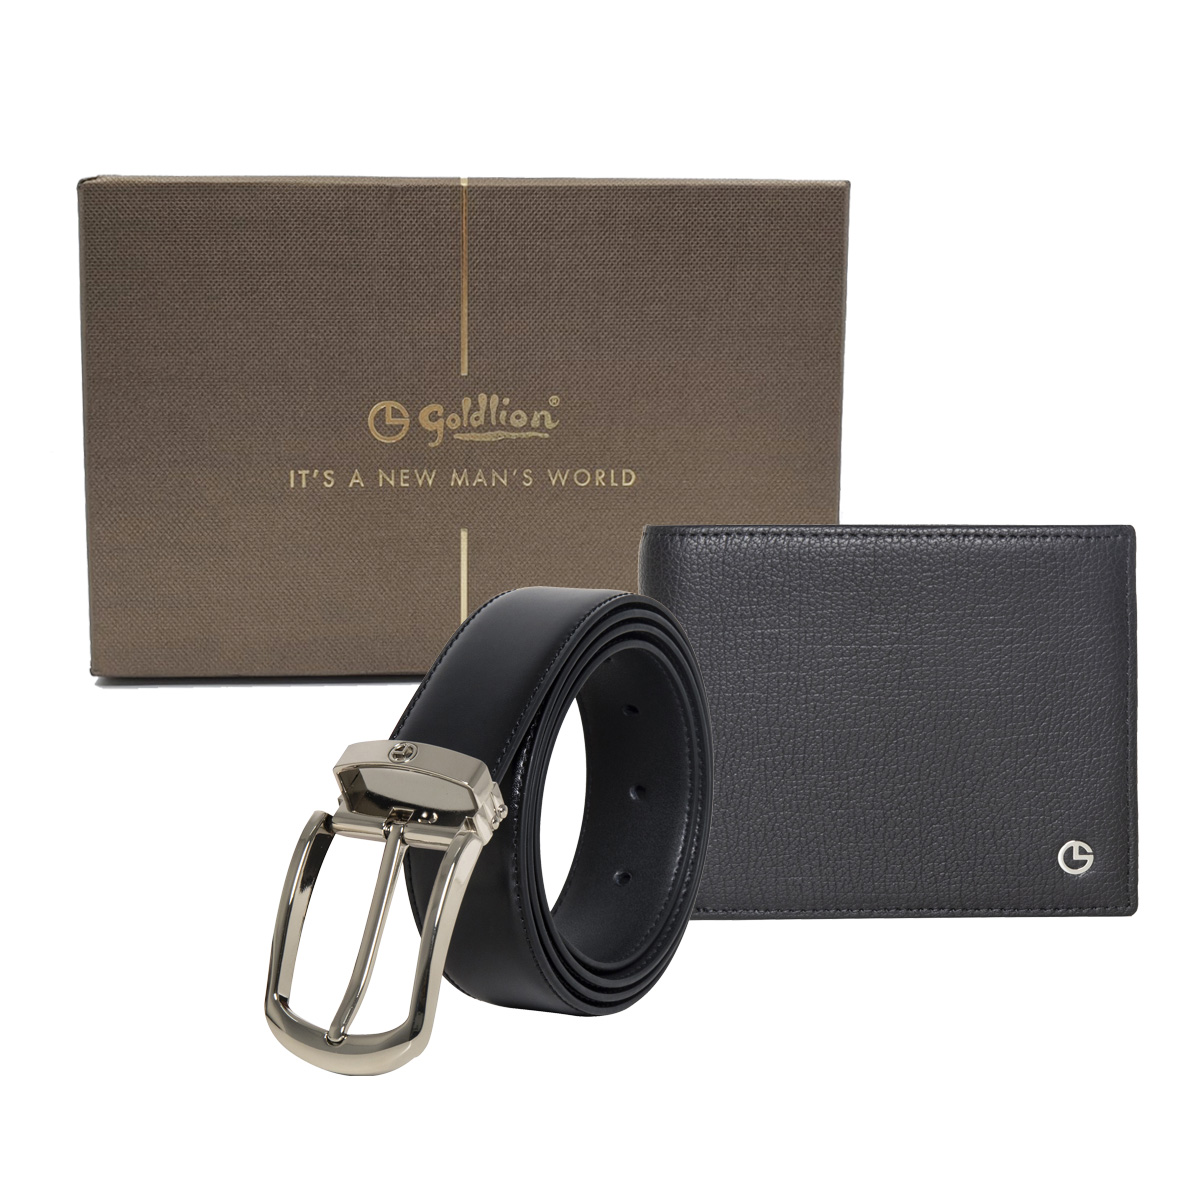 [Online Exclusive] Goldlion Genuine Leather 12 Cards Slot Wallet & Pin Belt Gift Set